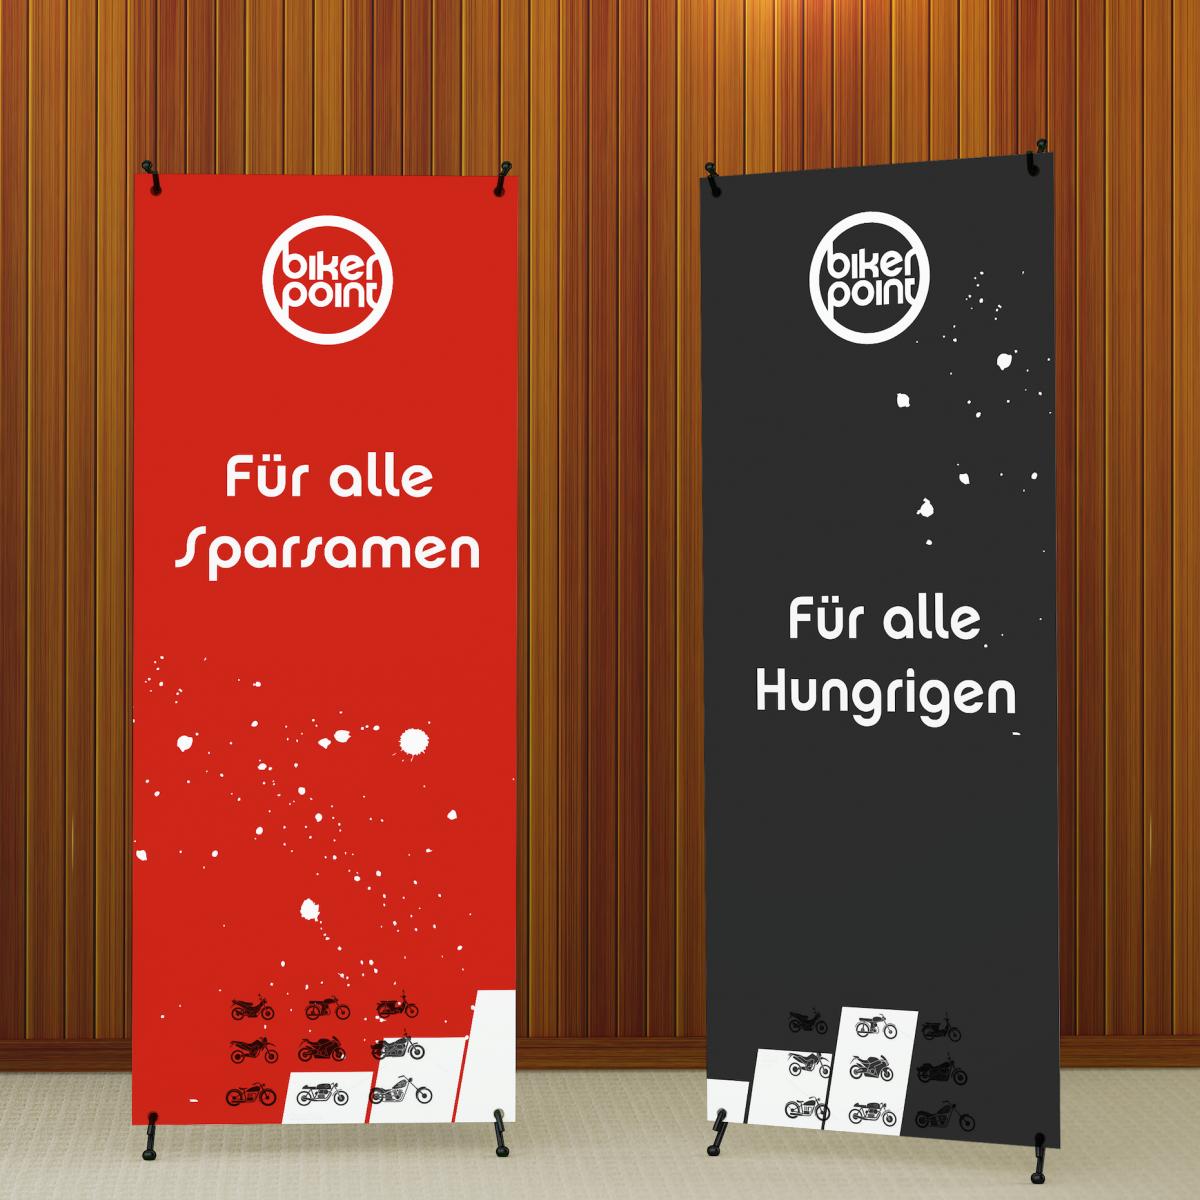 Zwei Rollup-Banner mit Werbung für Bikerpoint